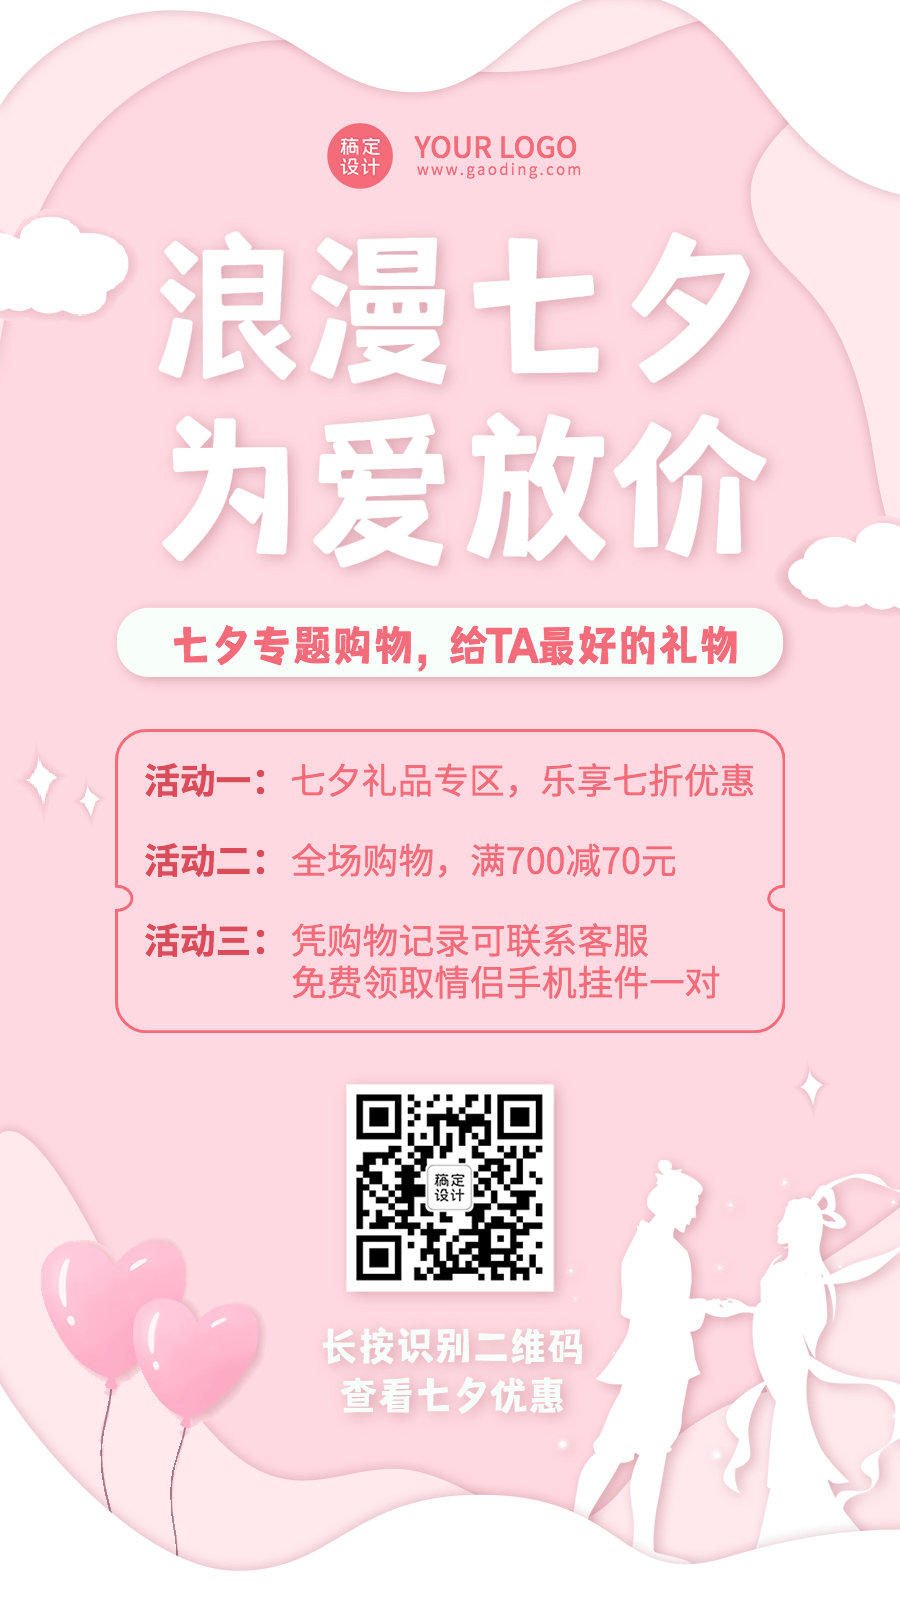 七夕节日活动营销GIF动态手机海报预览效果